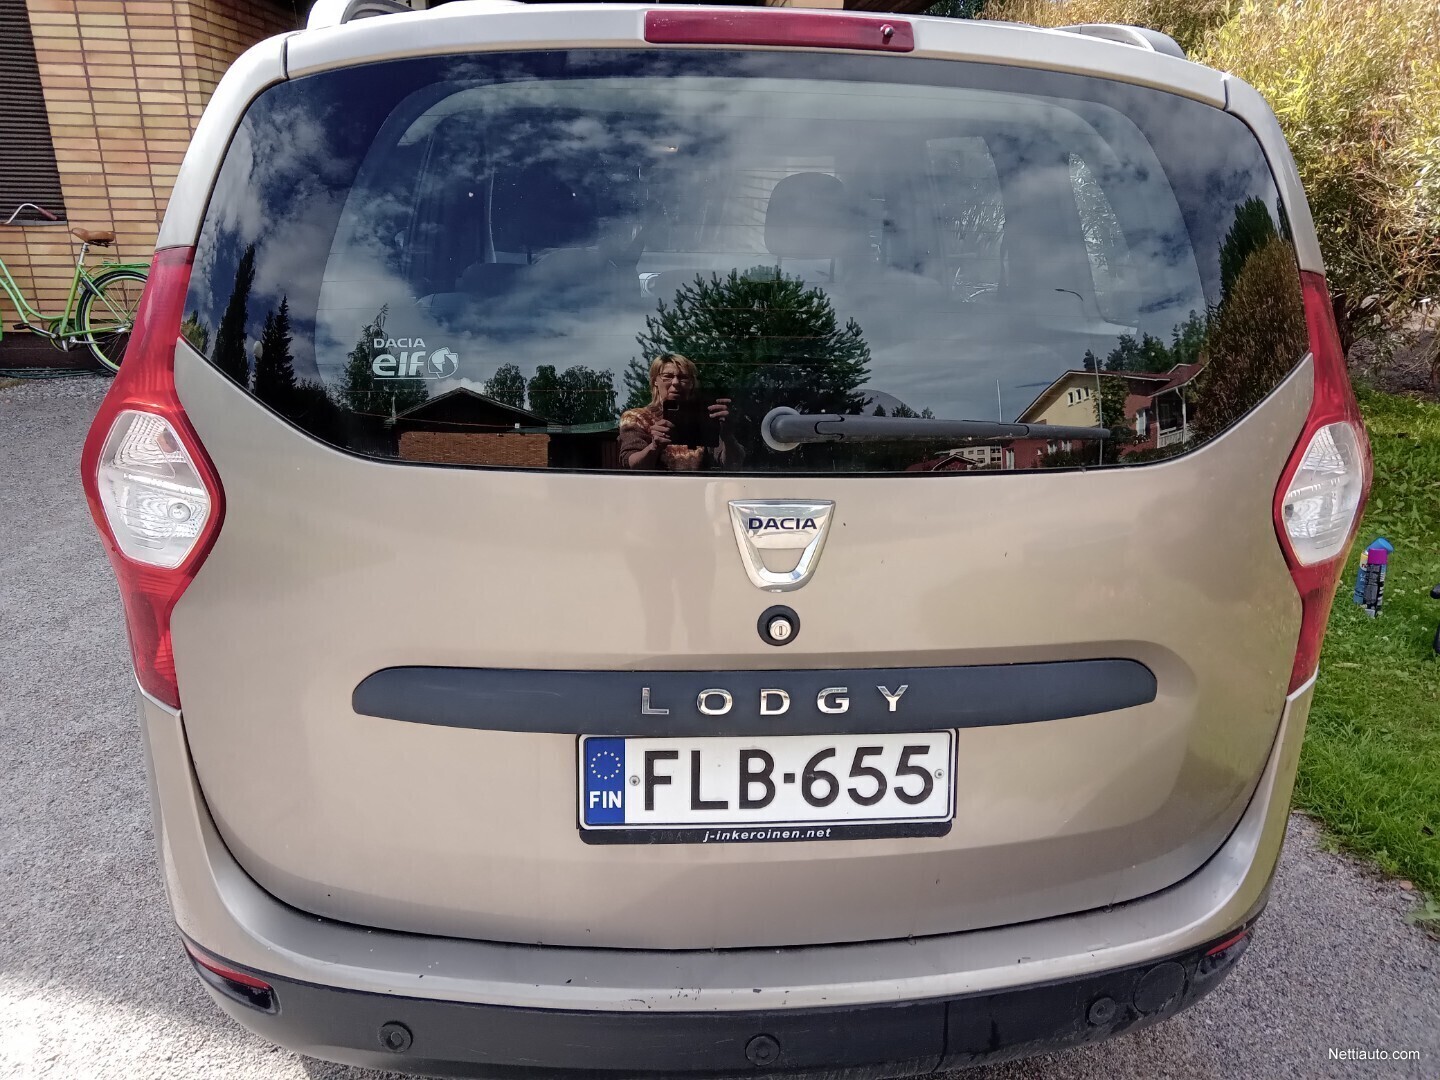 Dacia Lodgy MPV 2013 - Used vehicle - Nettiauto